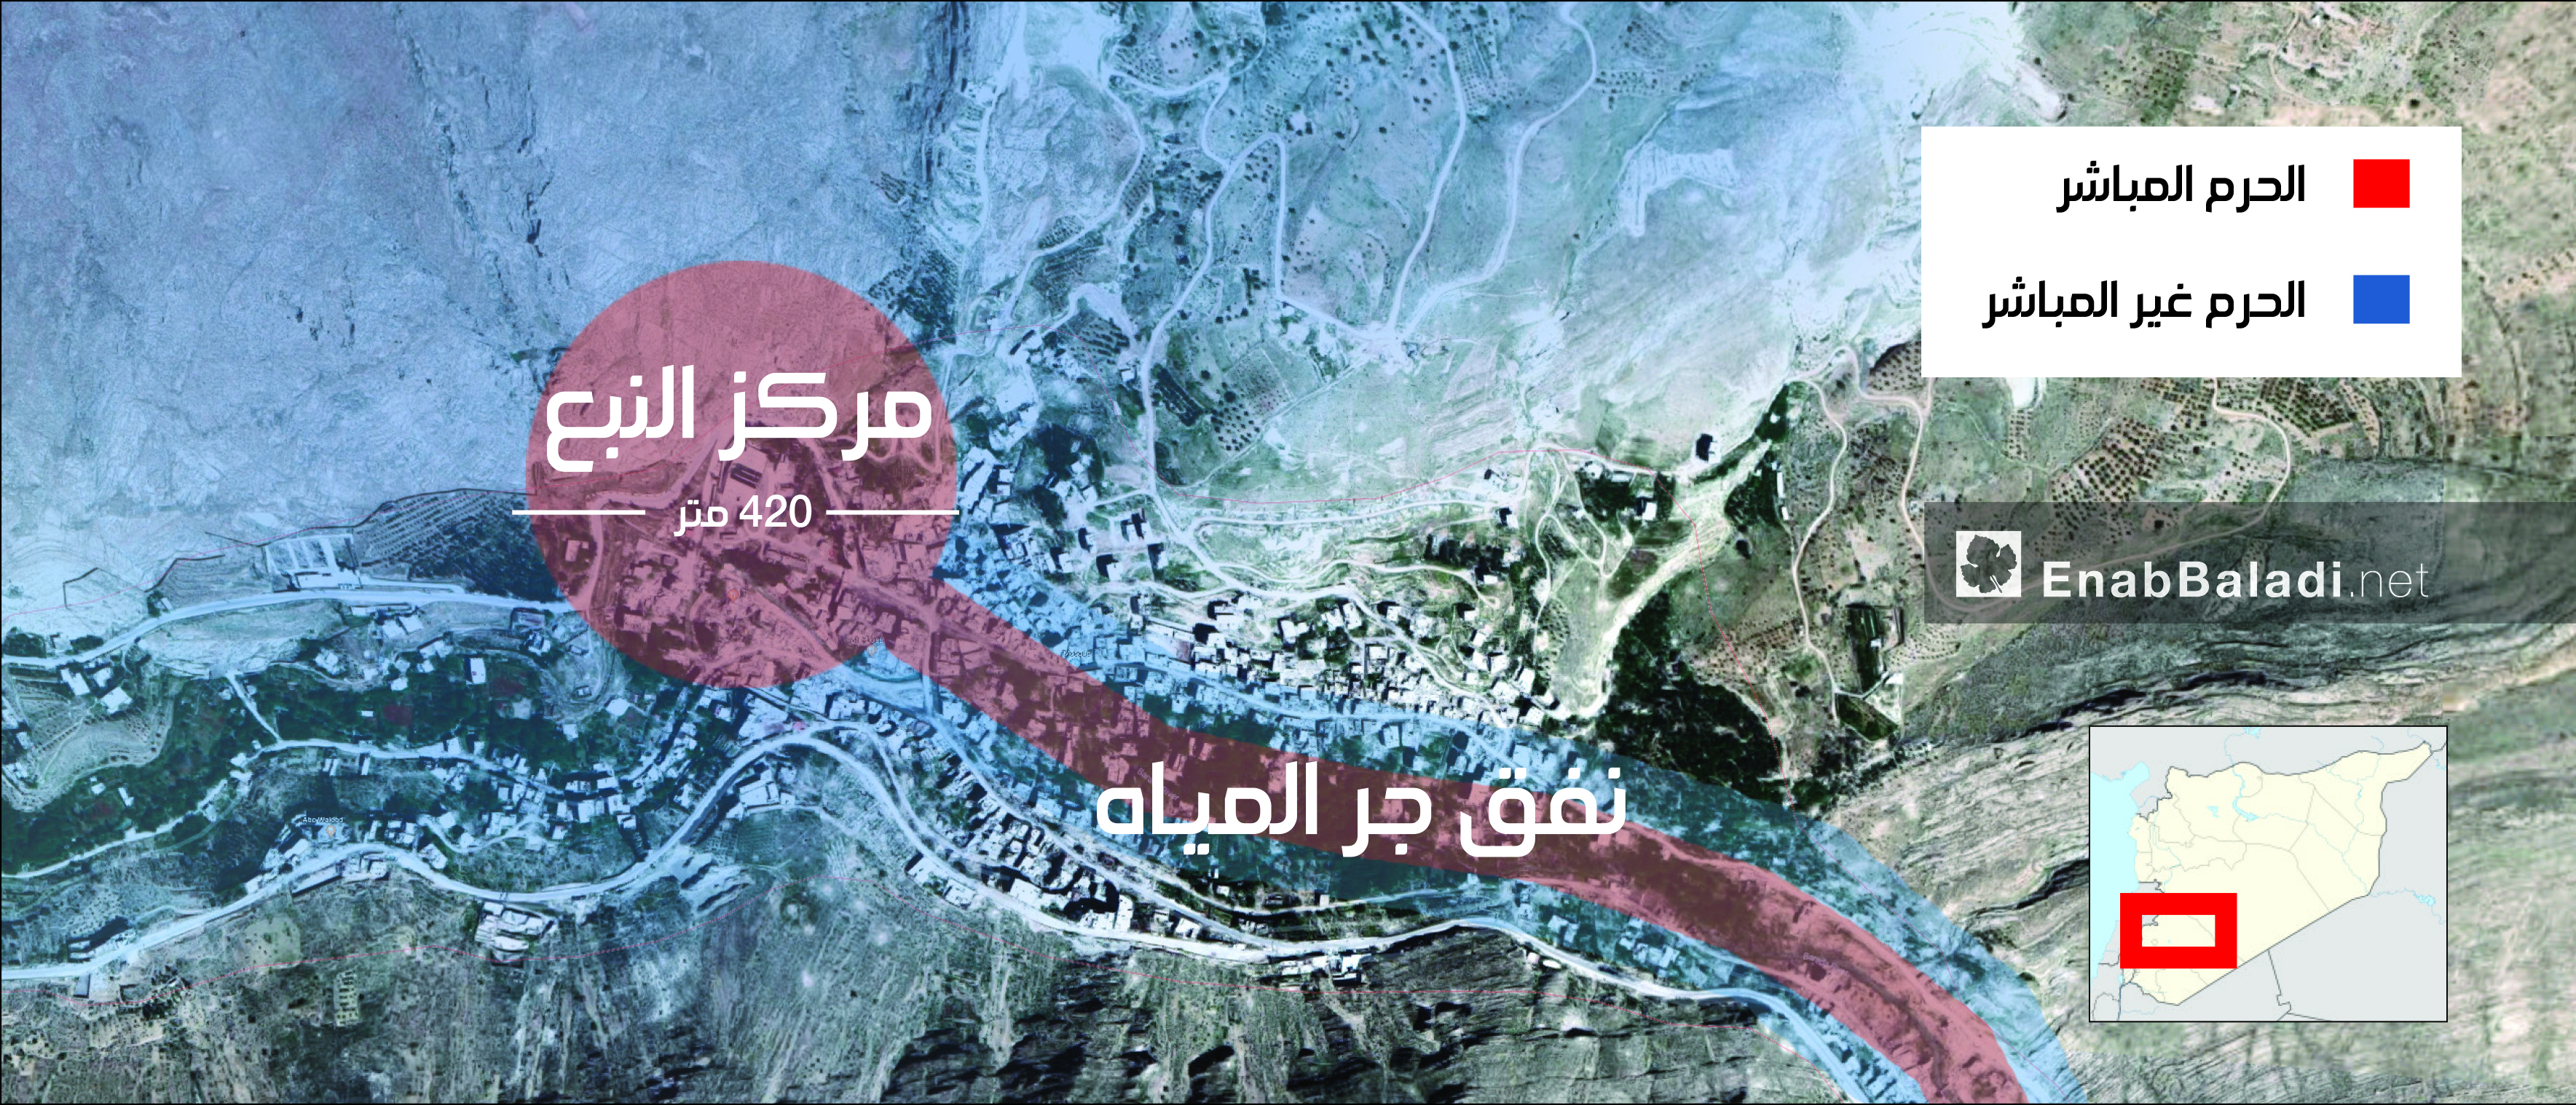 خريطة تظهر مساحات الاستملاك وفق القانون الجديد لحرمي عين الفيجة (عنب بلدي)